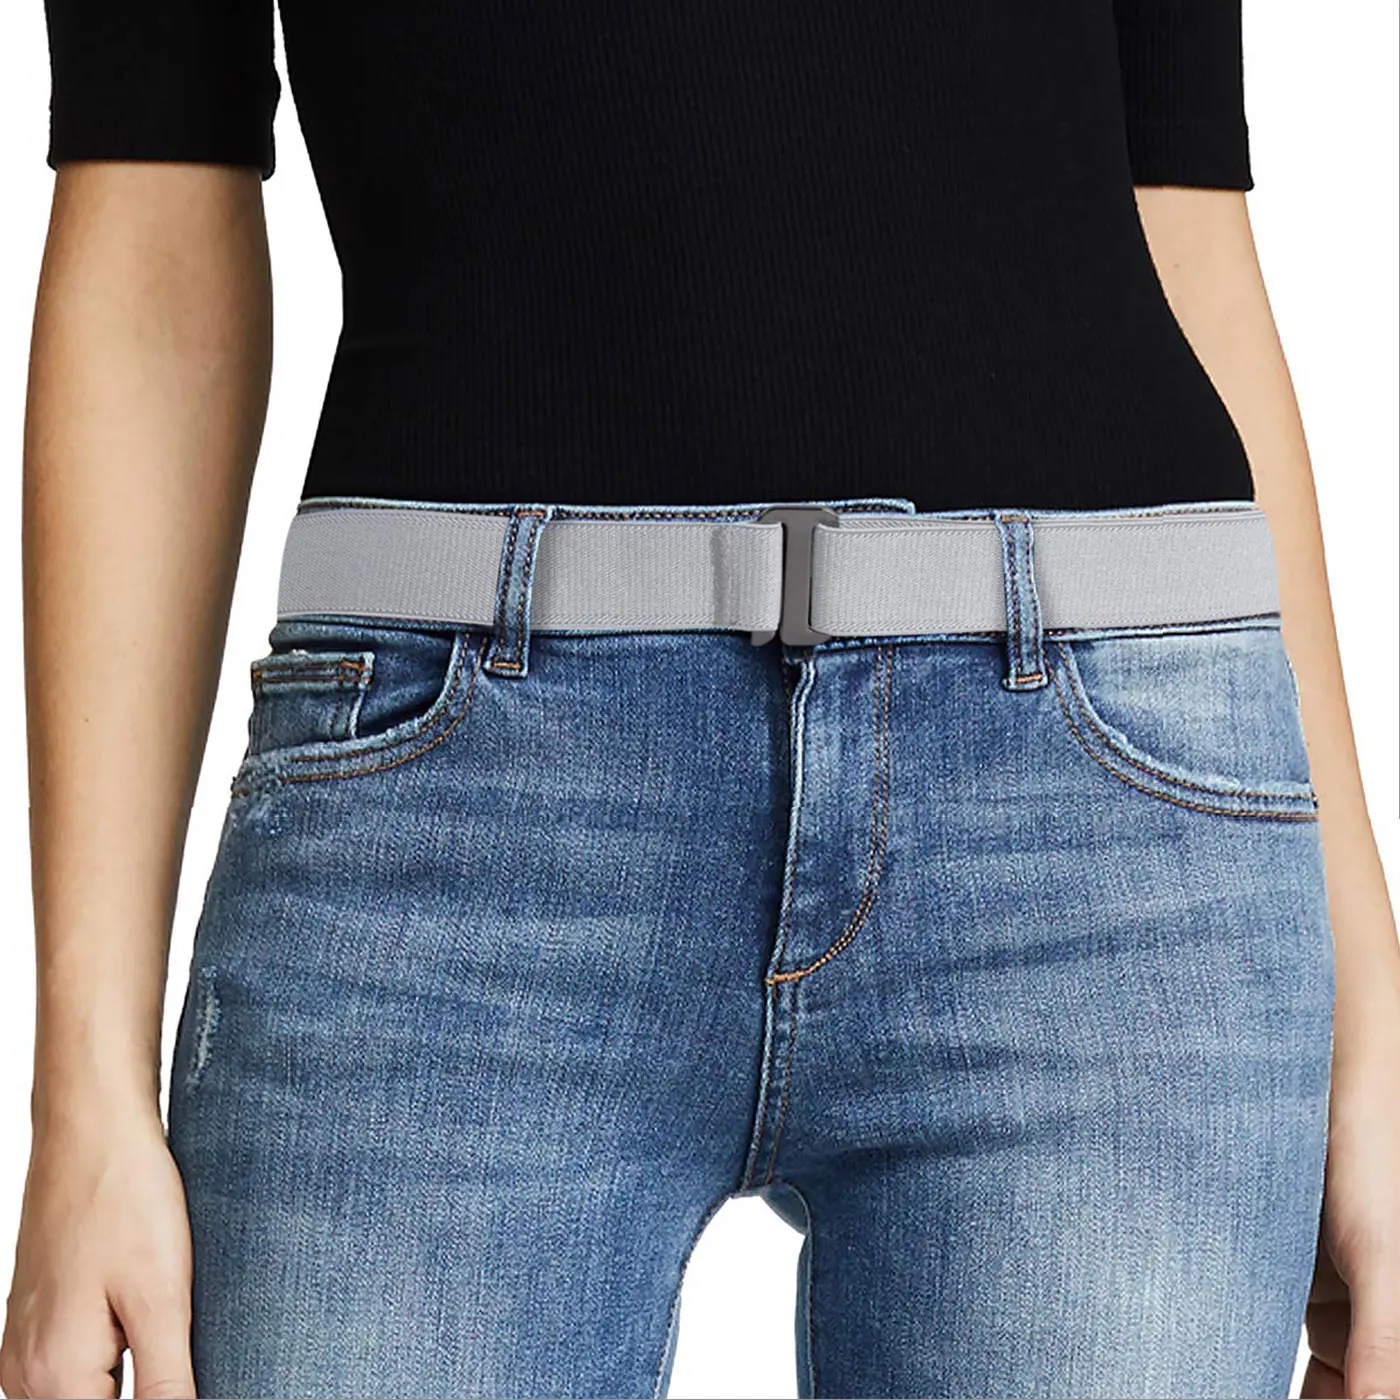 8 видов стилей нет шоу женский эластичный пояс Невидимый эластичный пояс с плоской пряжкой для джинсов брюки платья